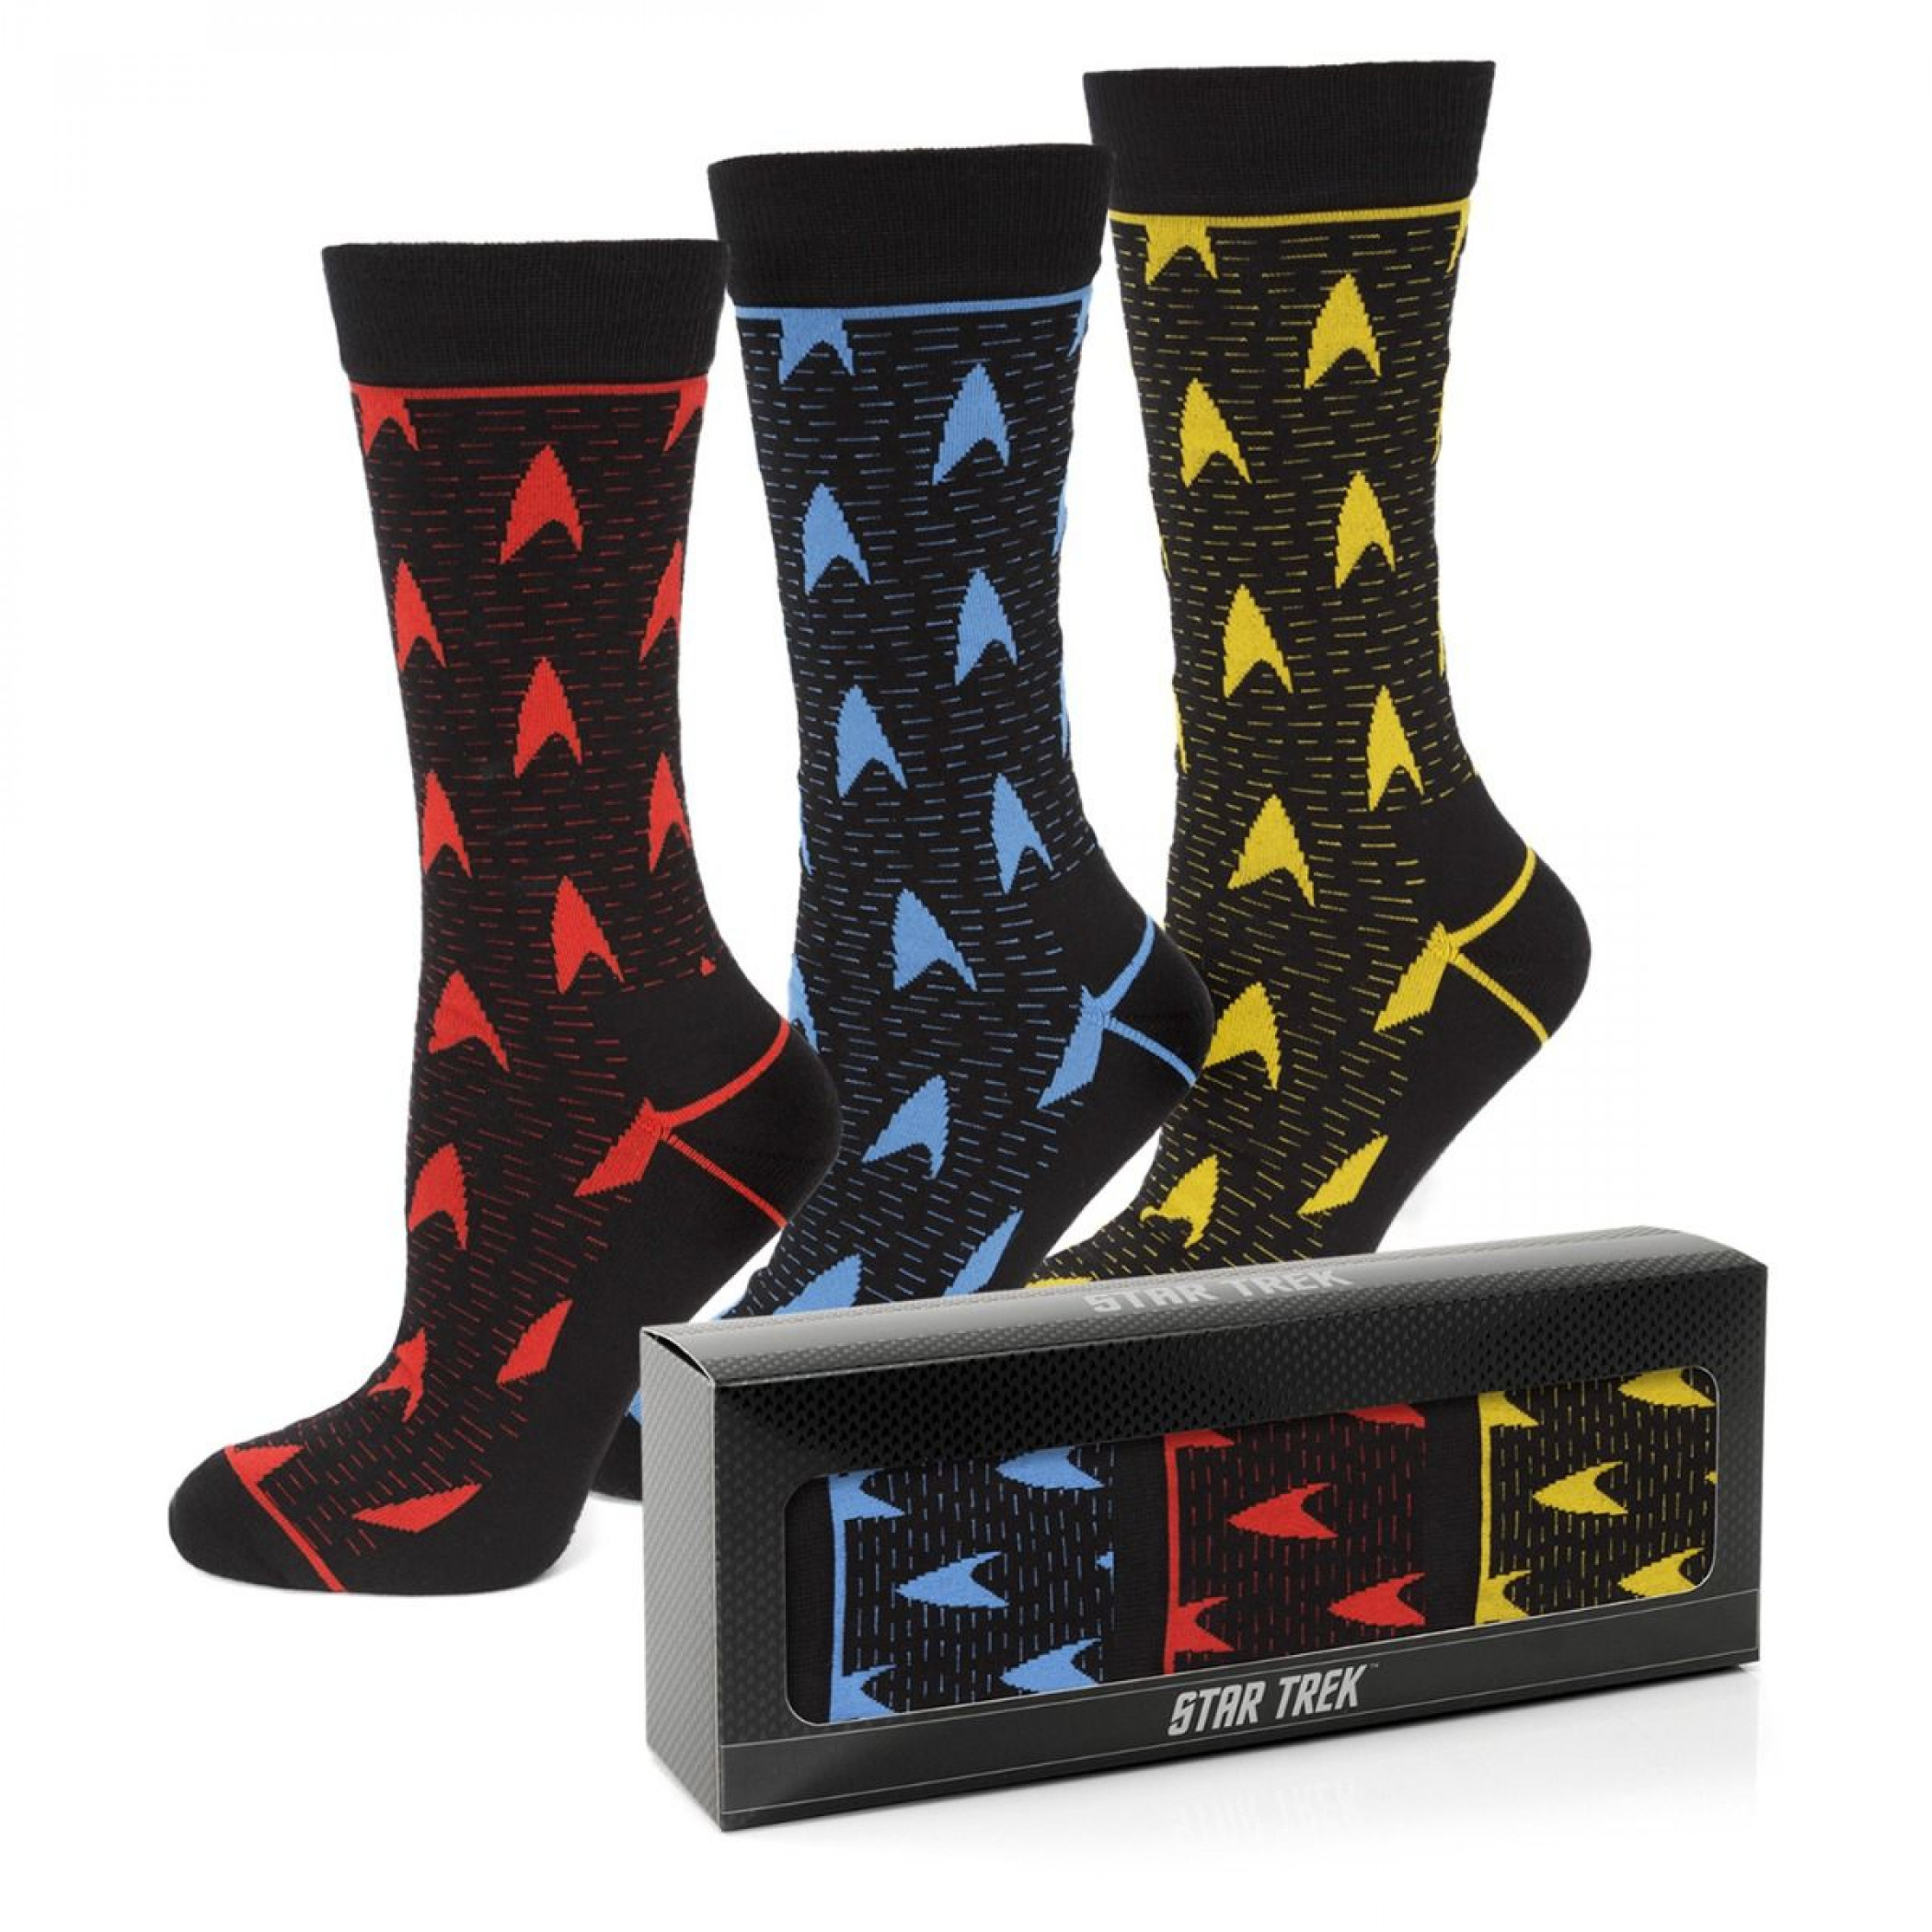 Star Trek 3 Pair Sock Gift Set